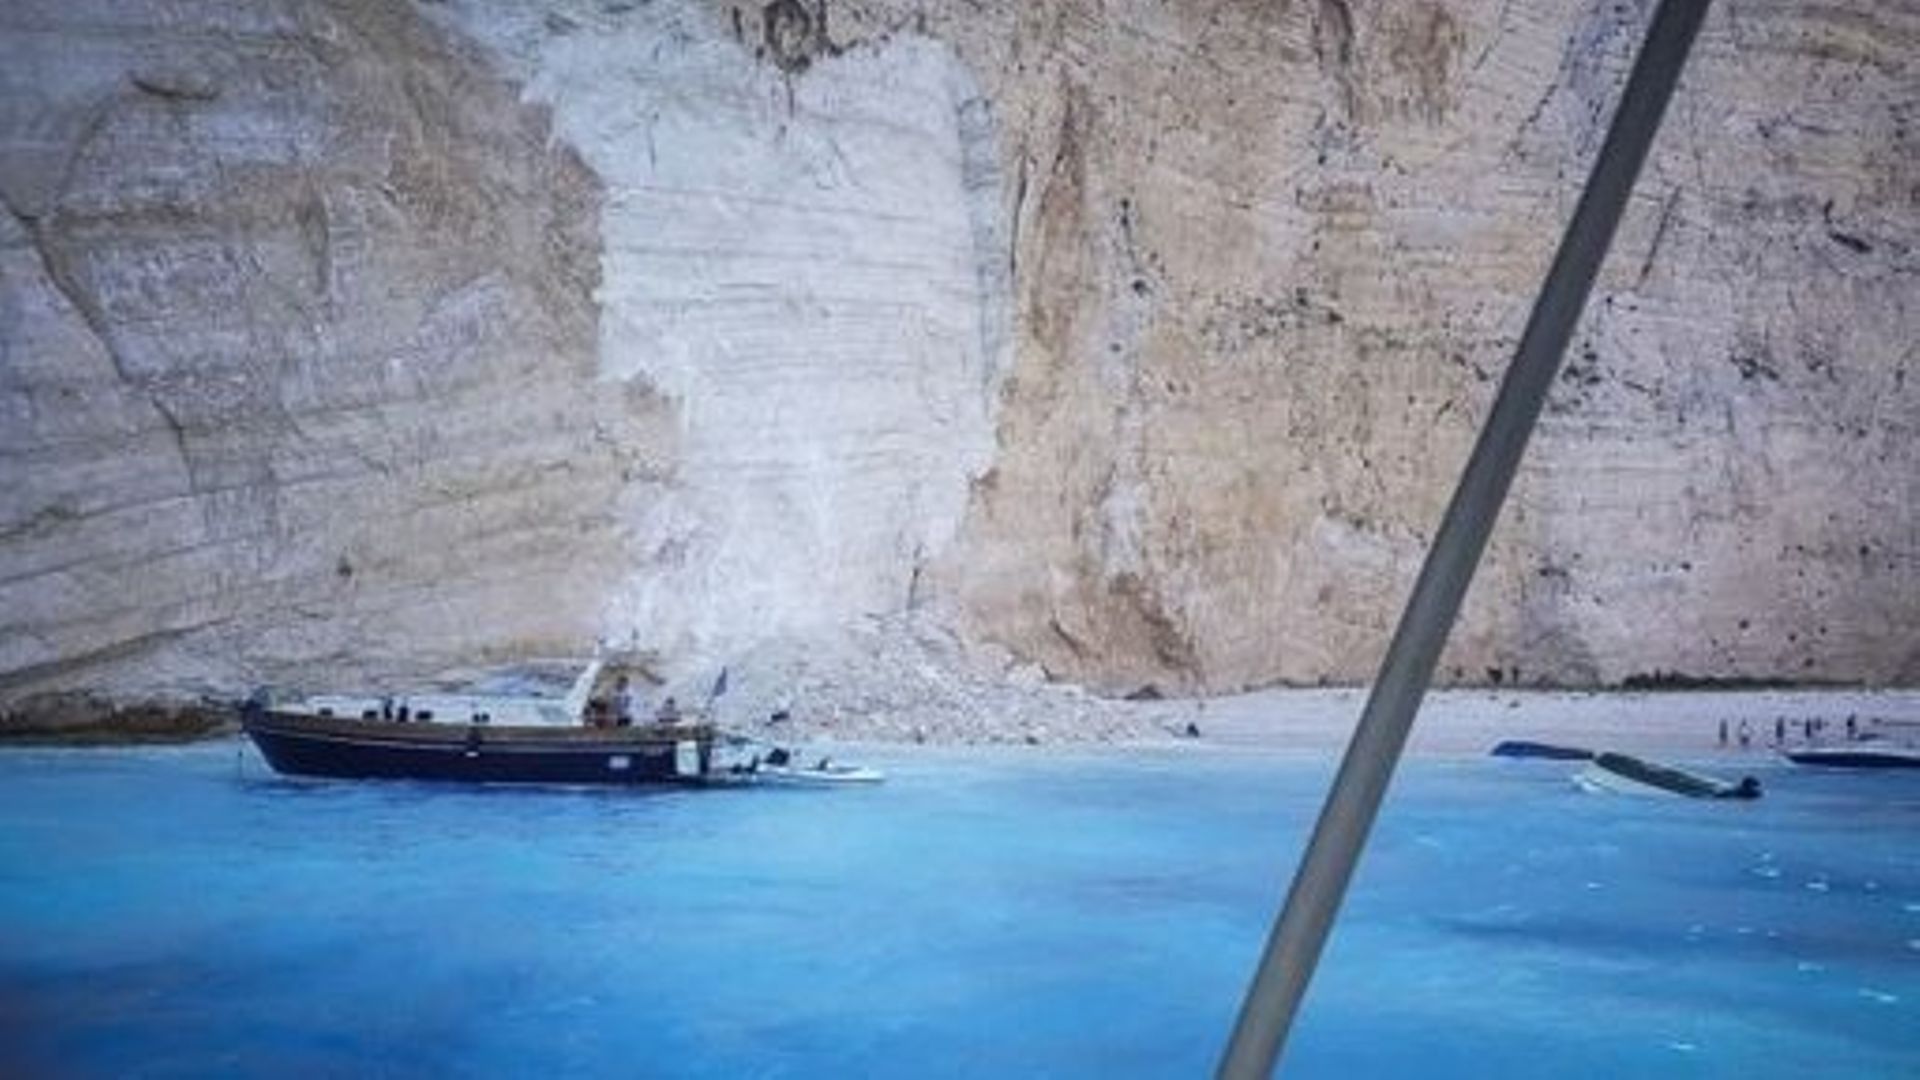 Grèce : la célèbre baie du Naufrage sur l’île de Zante interdite d’accès.